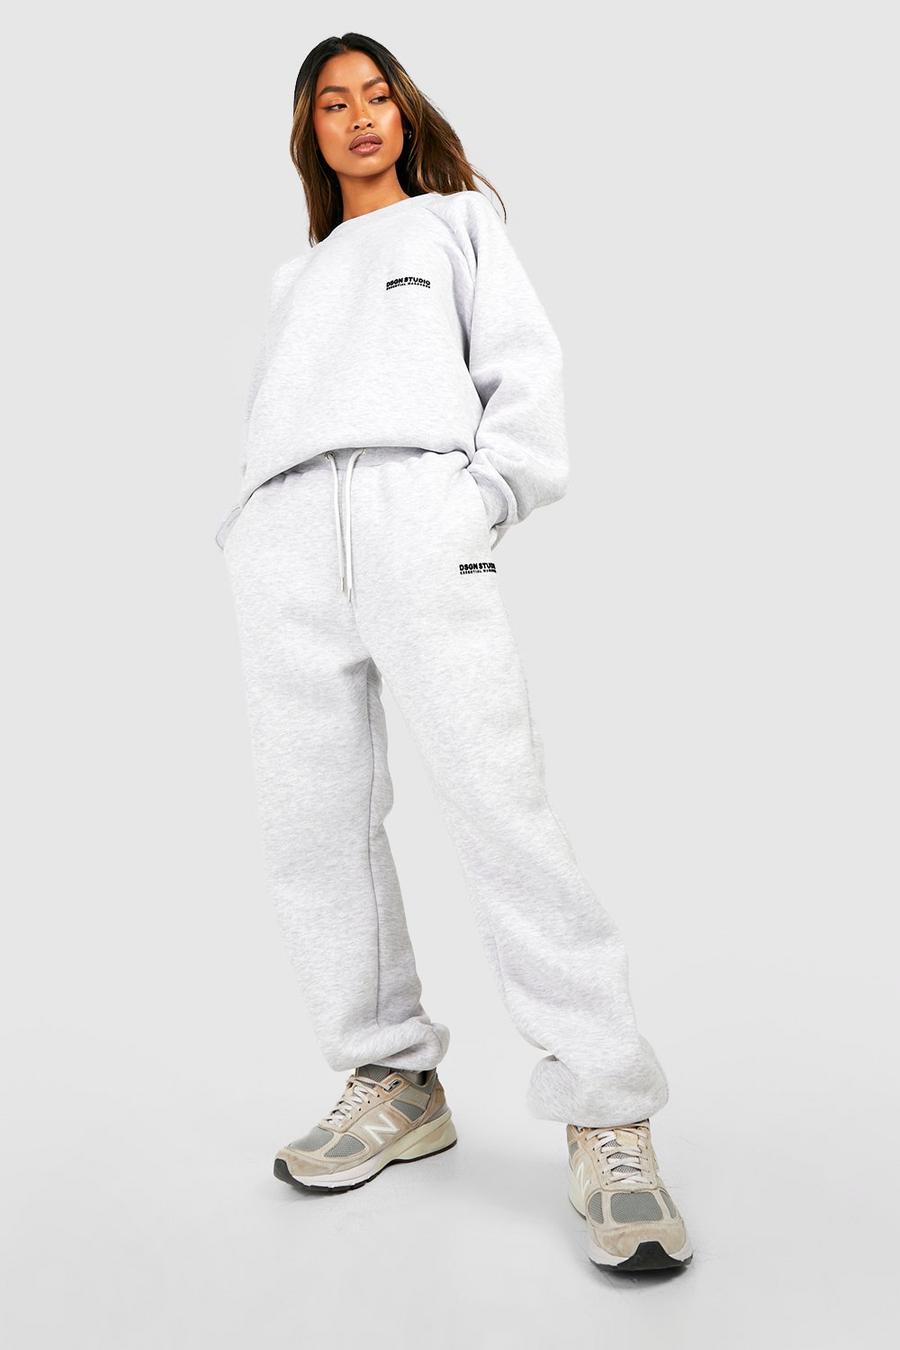 Pantalón deportivo Premium con botamanga y eslogan aterciopelado, Ash grey